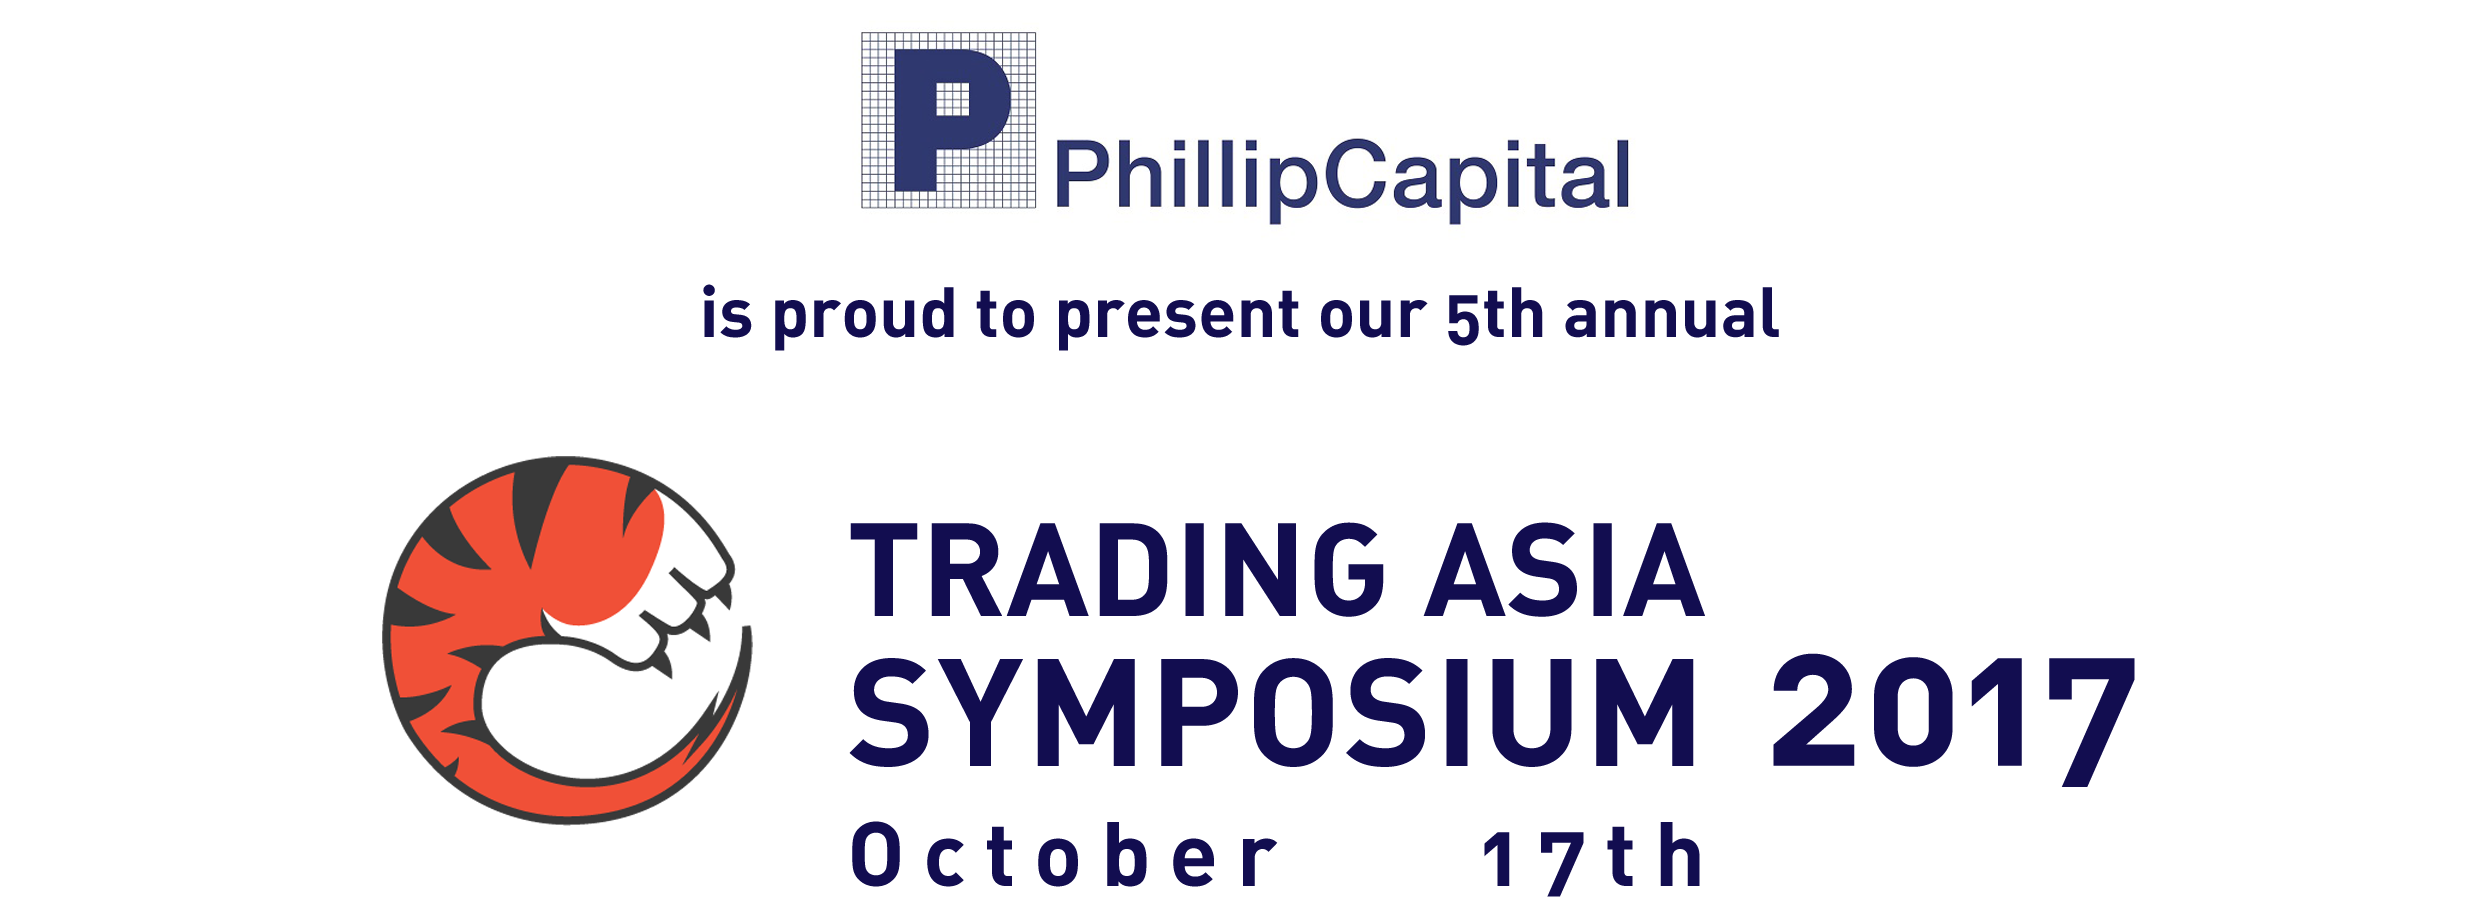 5th Annual Trading Asia Symposium